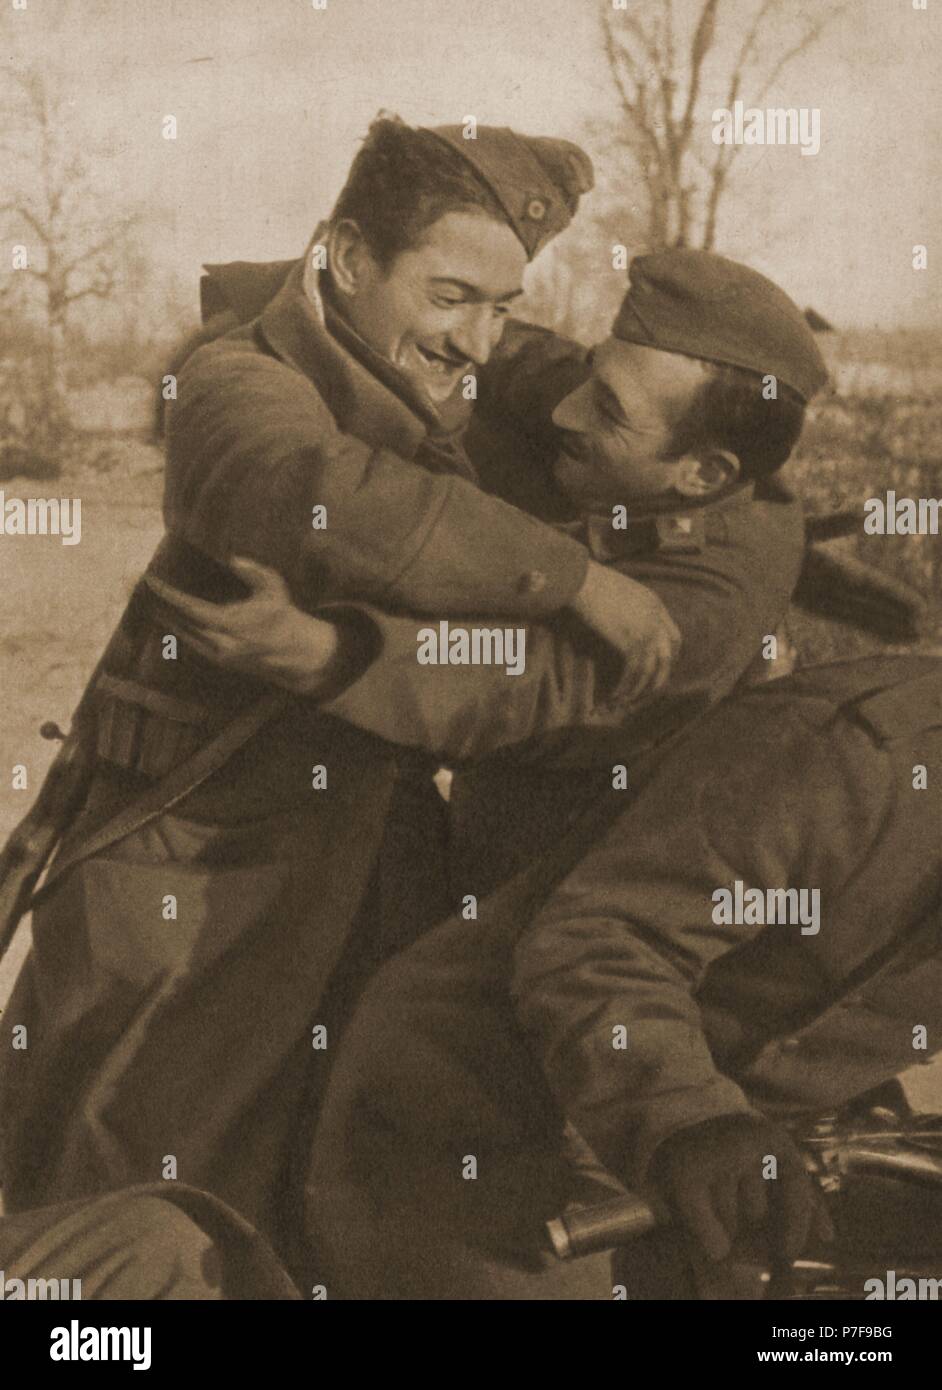 División Azul en Alemania en 1942 (Segunda Guerra Mundial). Encuentro de dos amigos en el frente ruso. Stock Photo